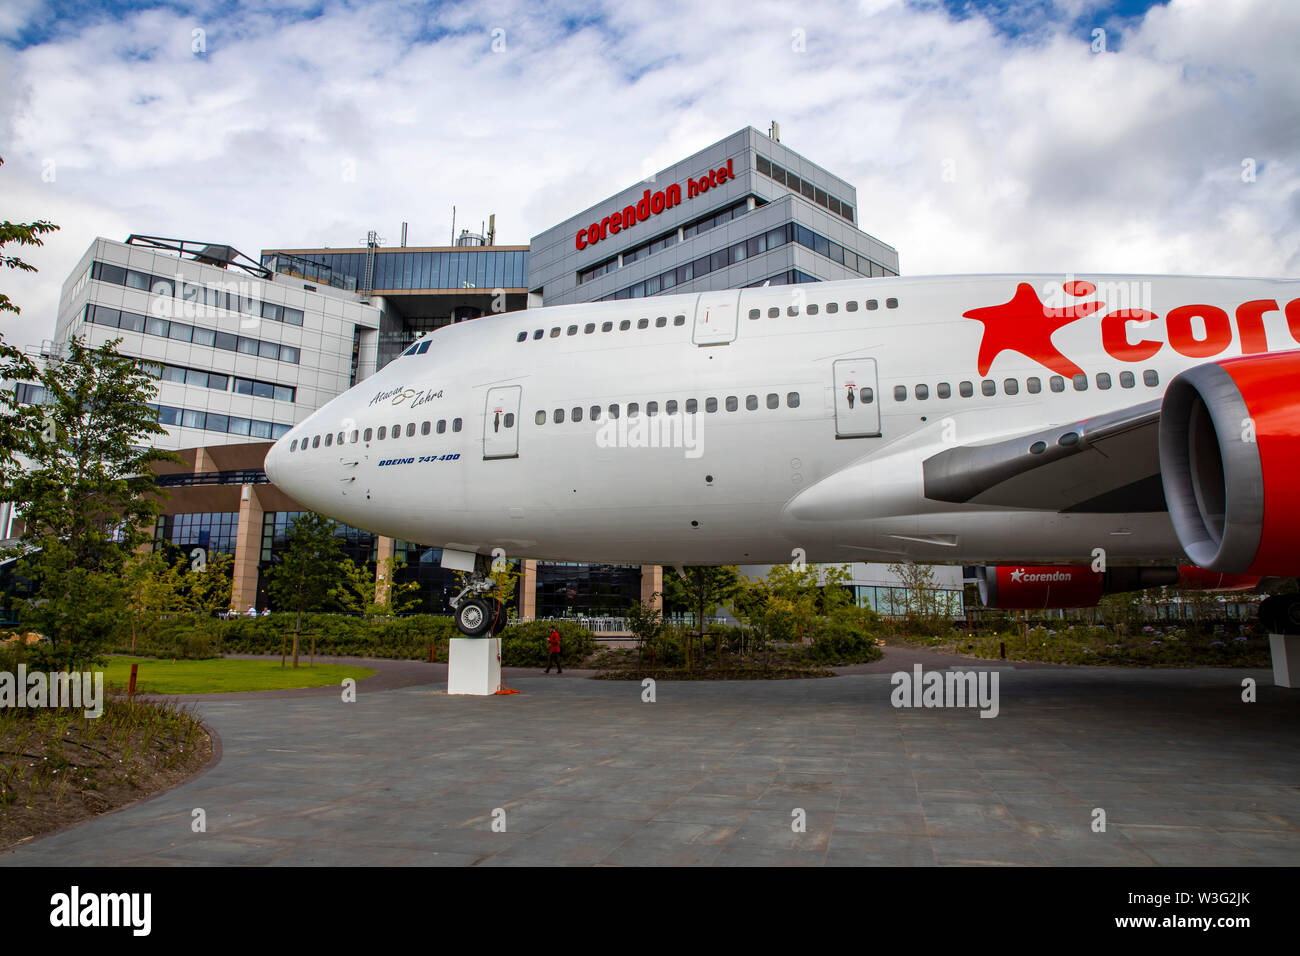 Corendon Hotels Village, à l'aéroport d'Amsterdam-Schiphol, ex-KLM Boeing 747-400, Jumbo jet, dans le parc de l'hôtel complexe, seront convertis en Banque D'Images